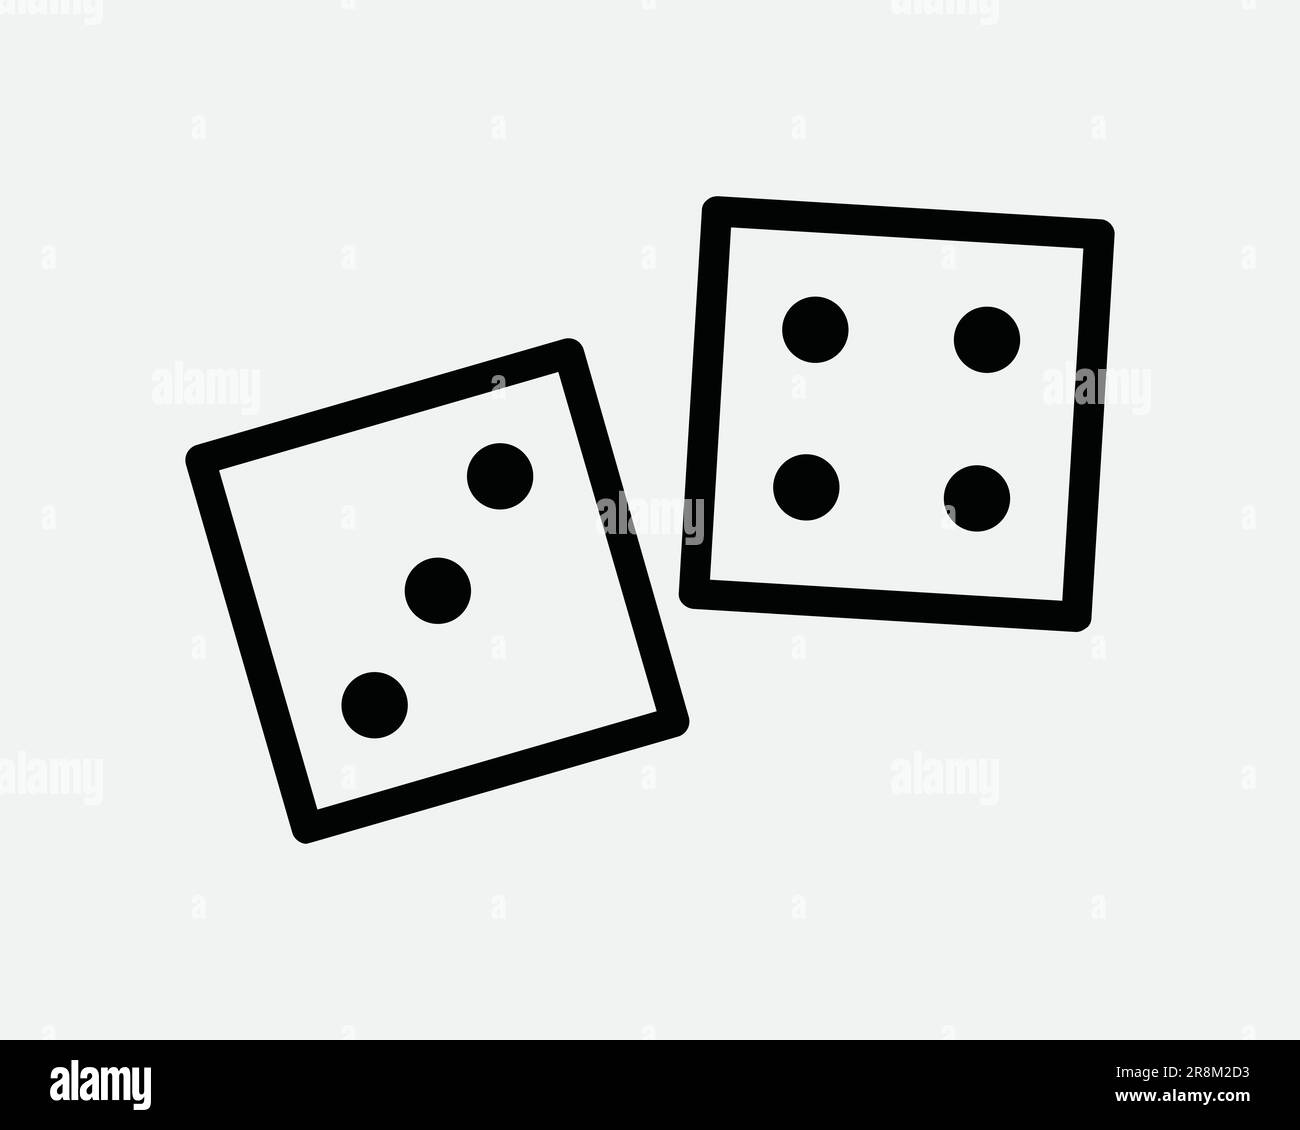 Icône Casino Dice. Jeu de hasard jeu de chance jouer Fortune Cube succès pari noir blanc signe symbole Illustration Illustration graphique Clipart EPS Vector Illustration de Vecteur